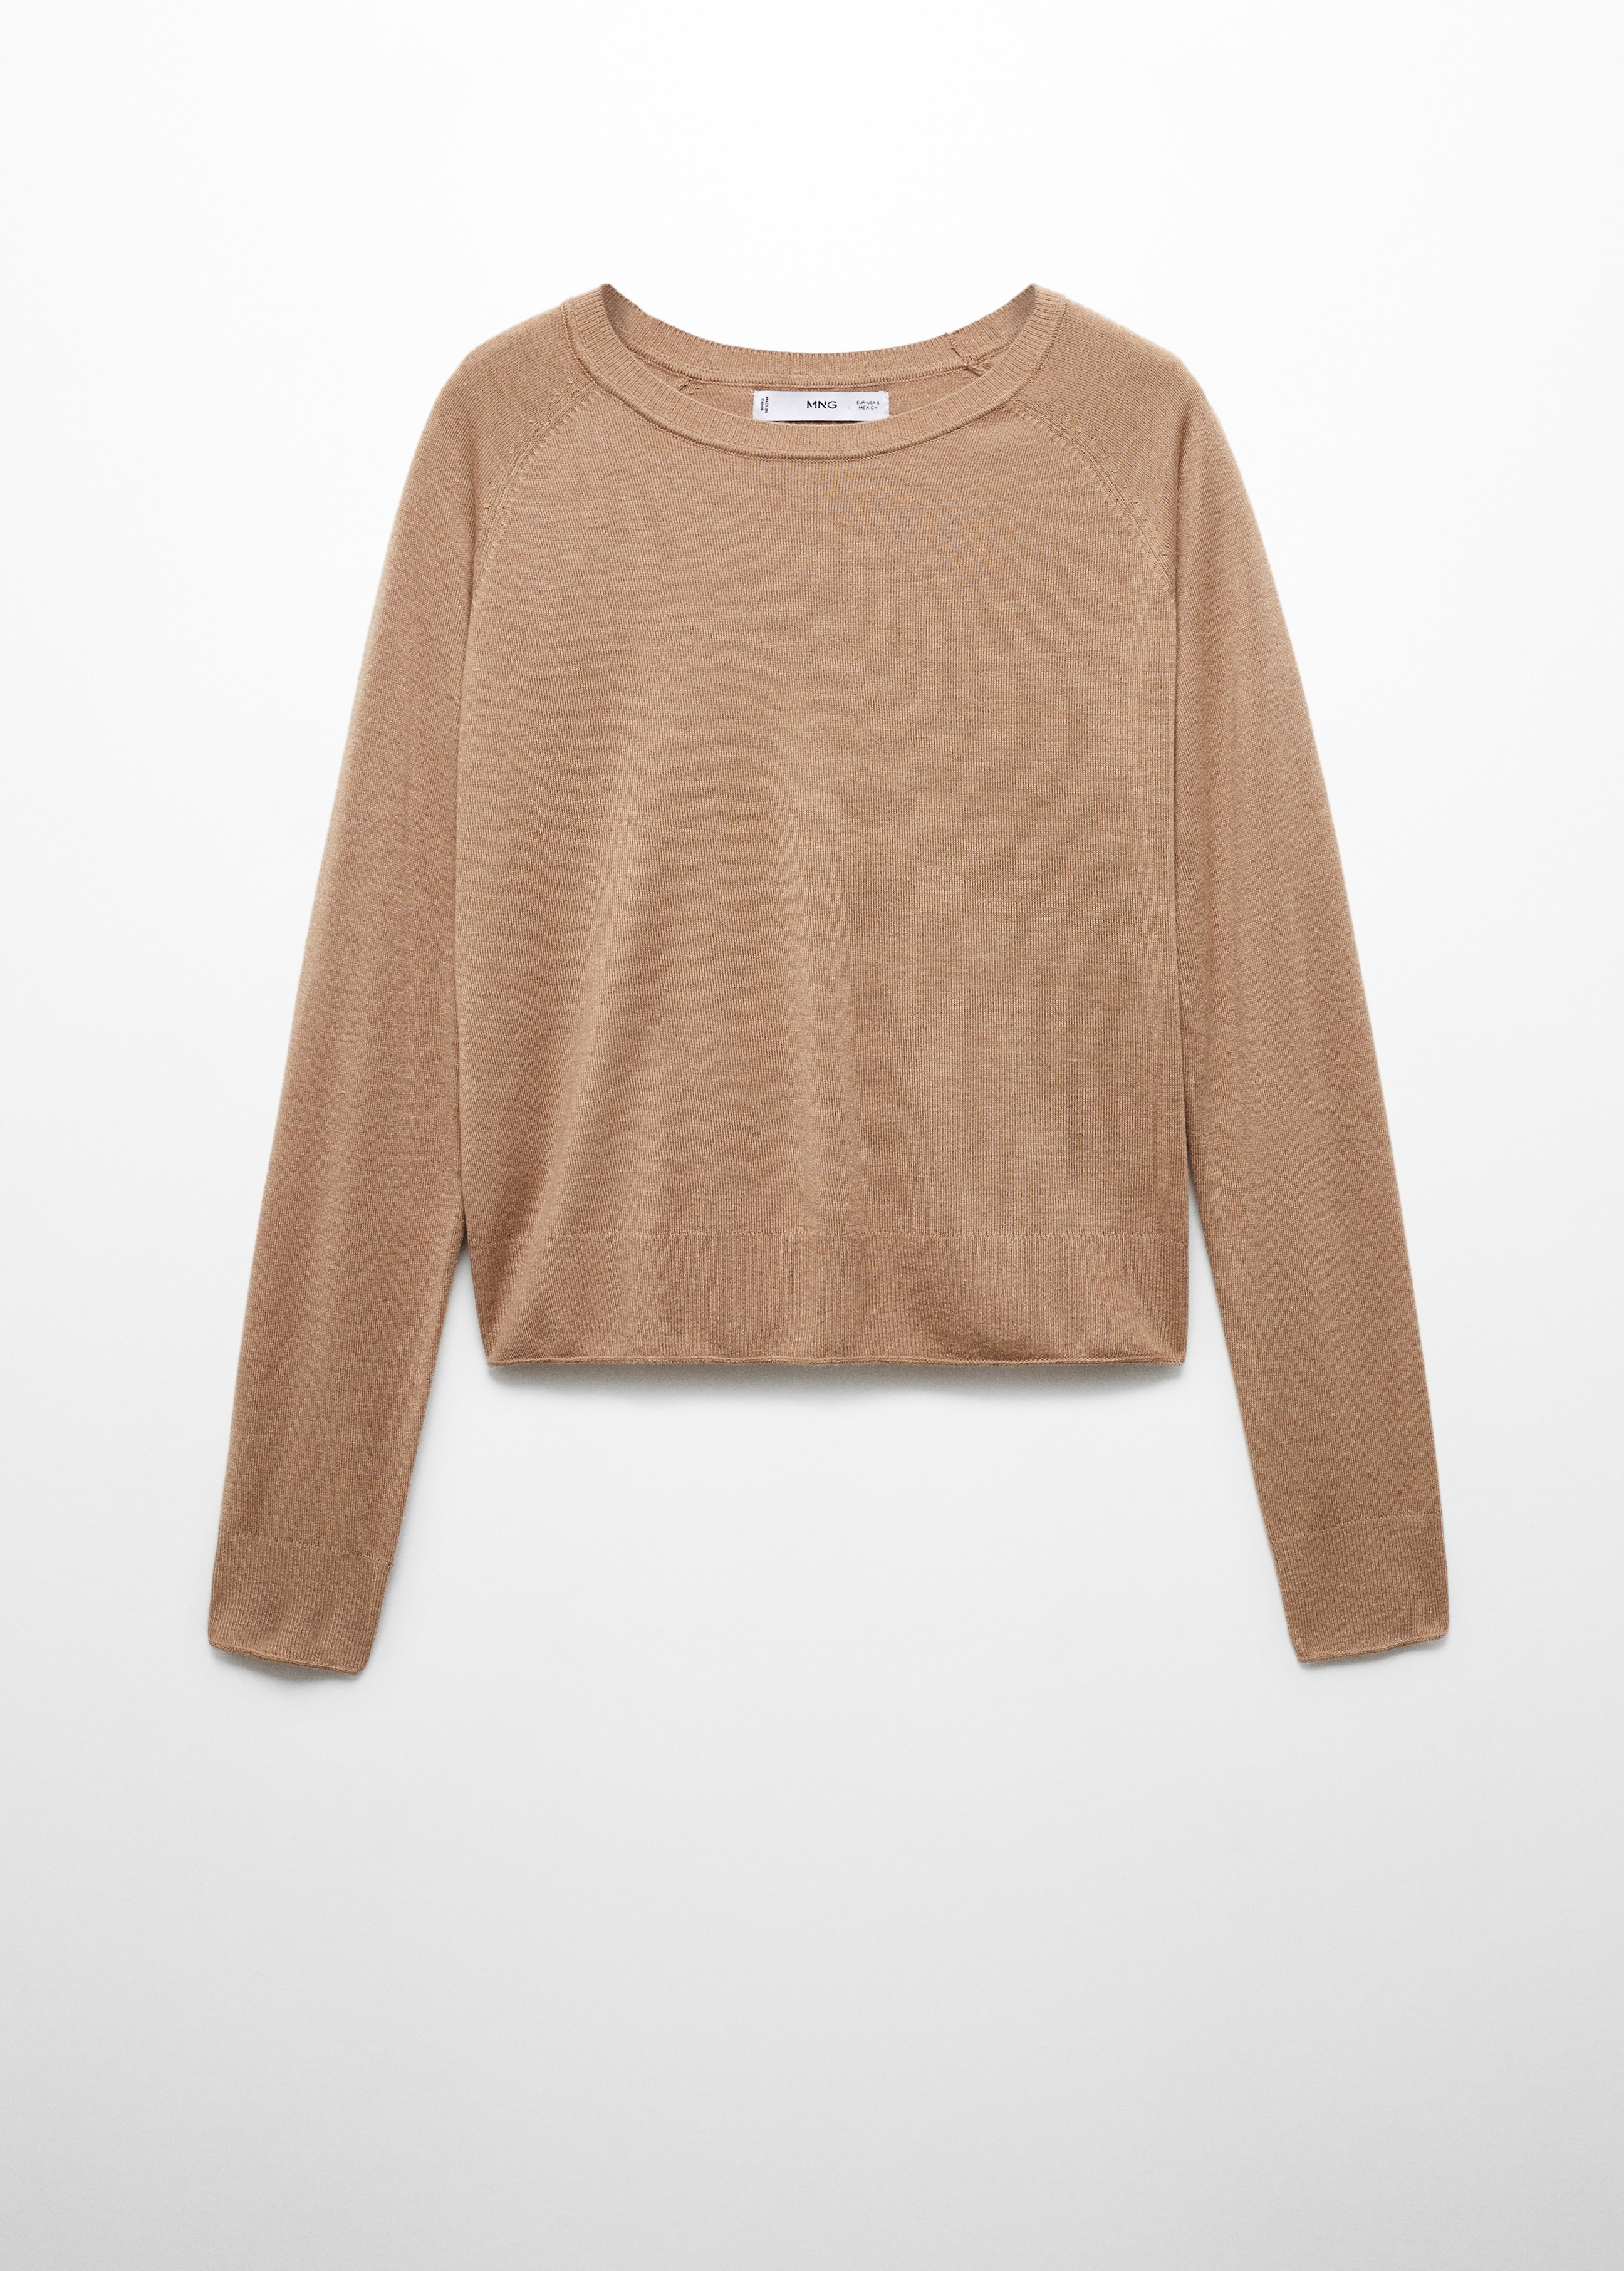 100% cashmere round-neck sweater